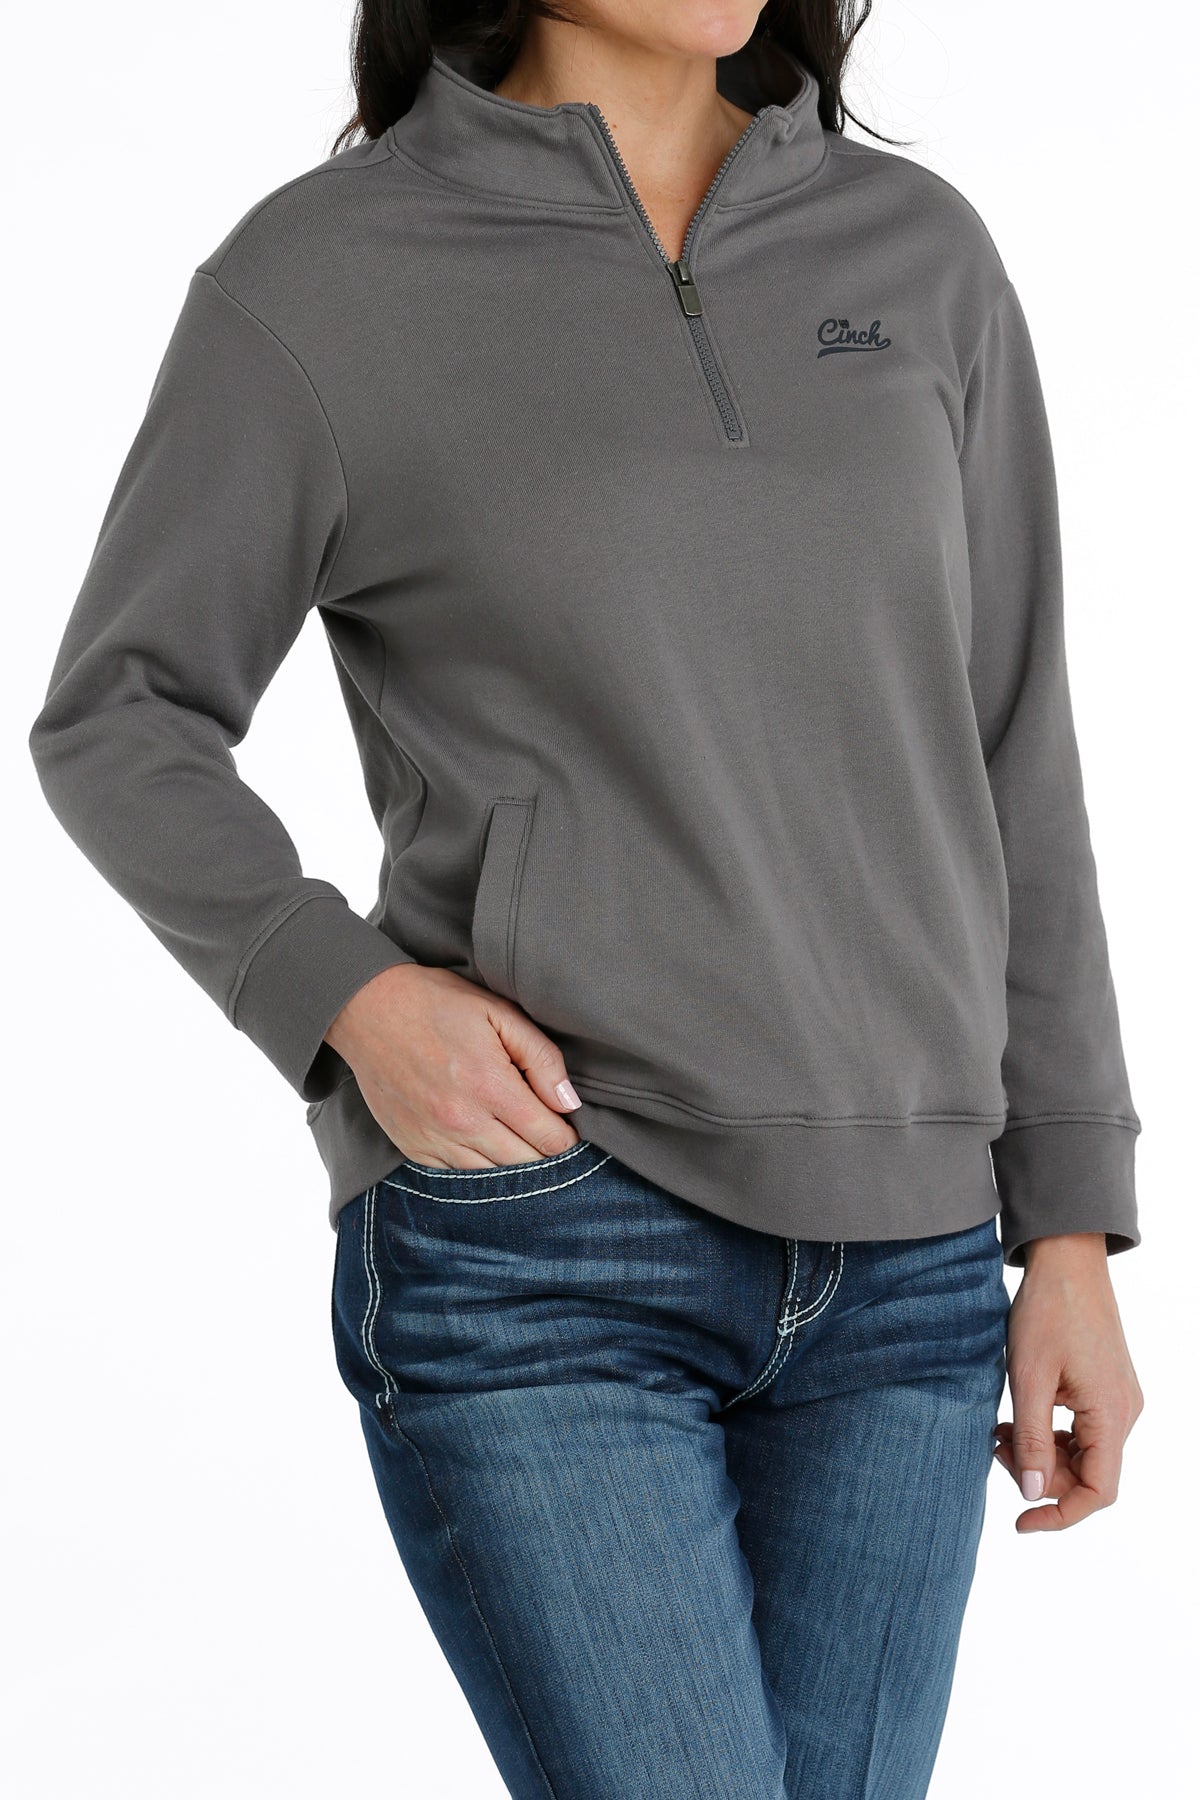 Womens grey Cinch 1/4 zip pullover